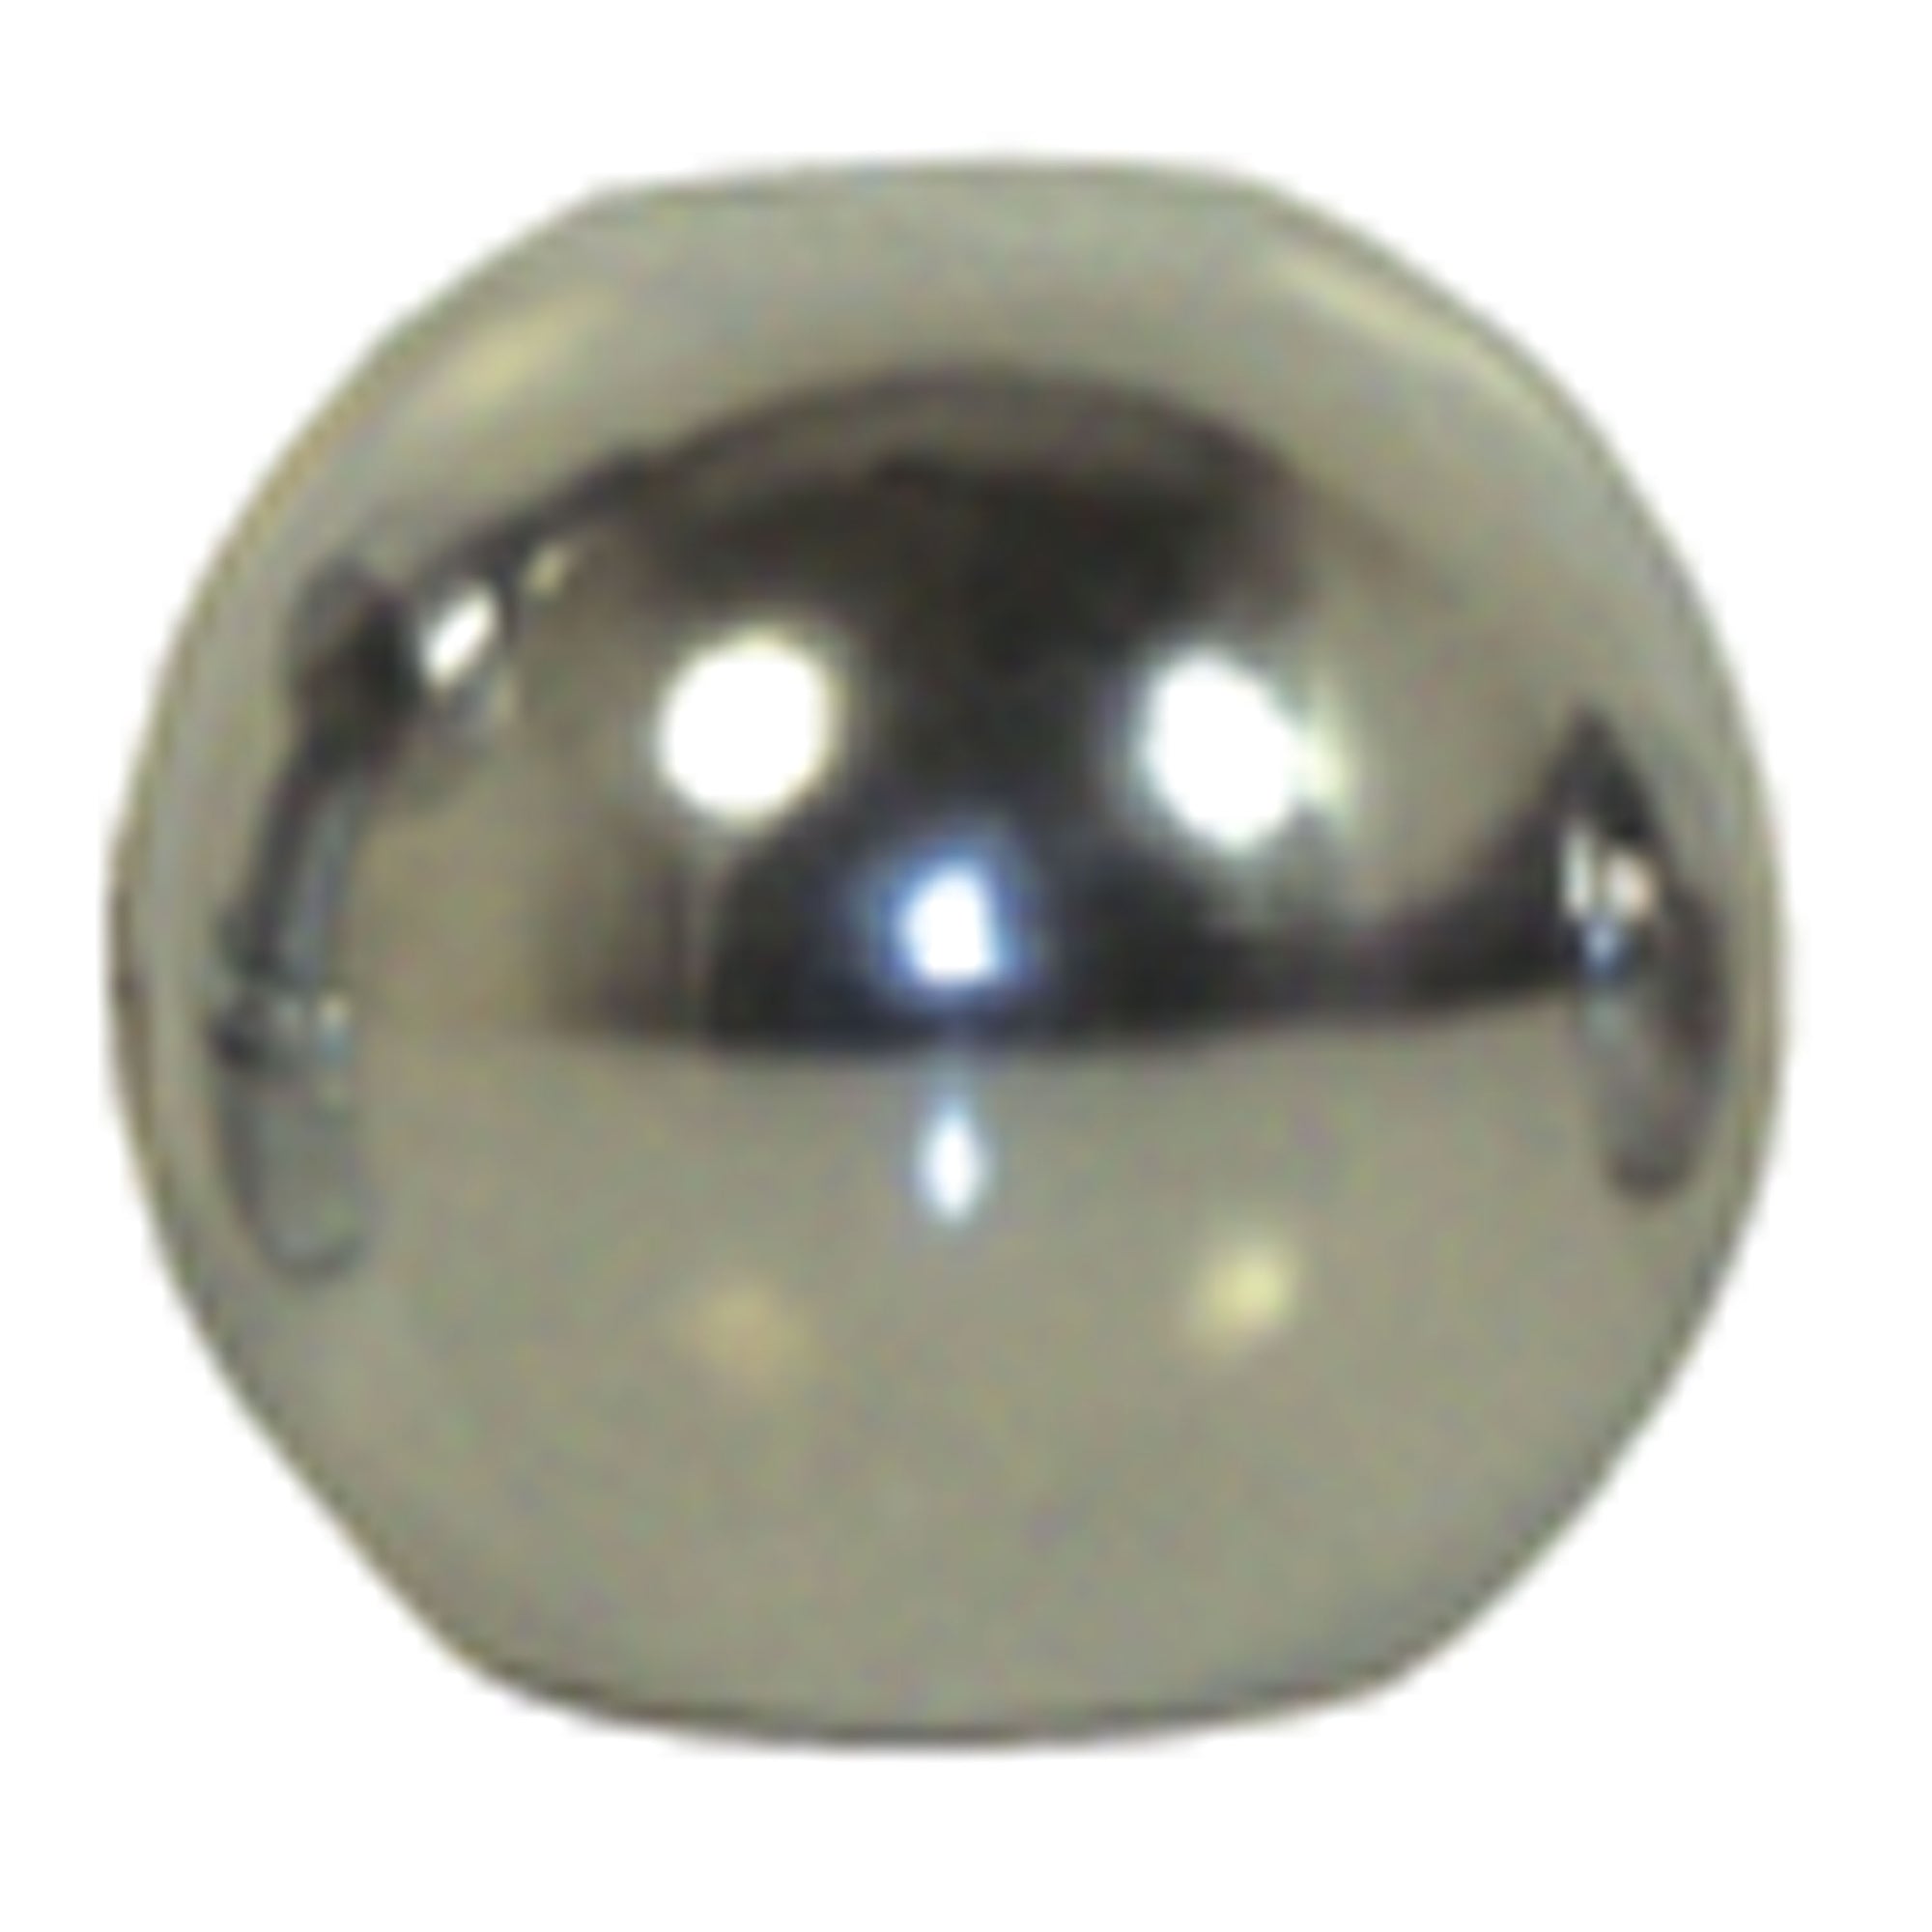 Convert-A-Ball 301B Stainless Steel Replacement Ball - 1-7/8"